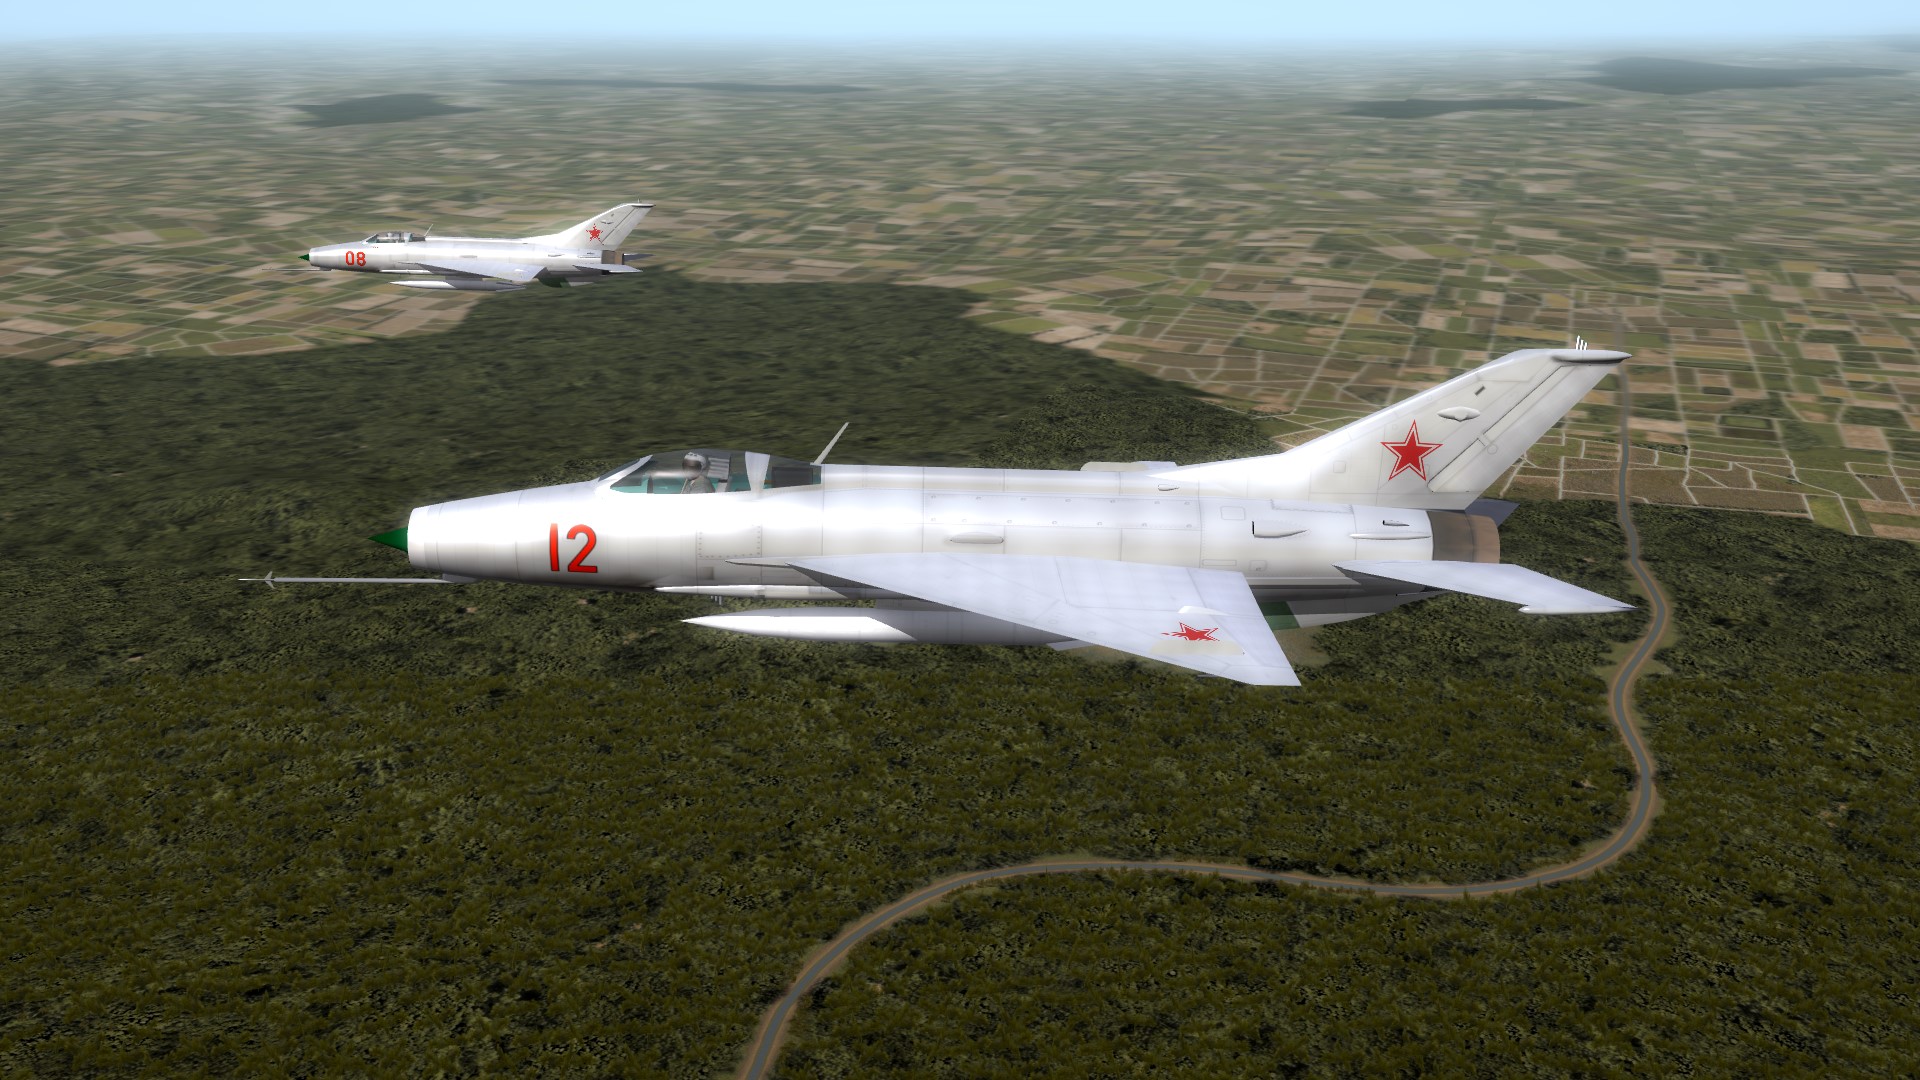 MiG-21F "Fishbed-B"